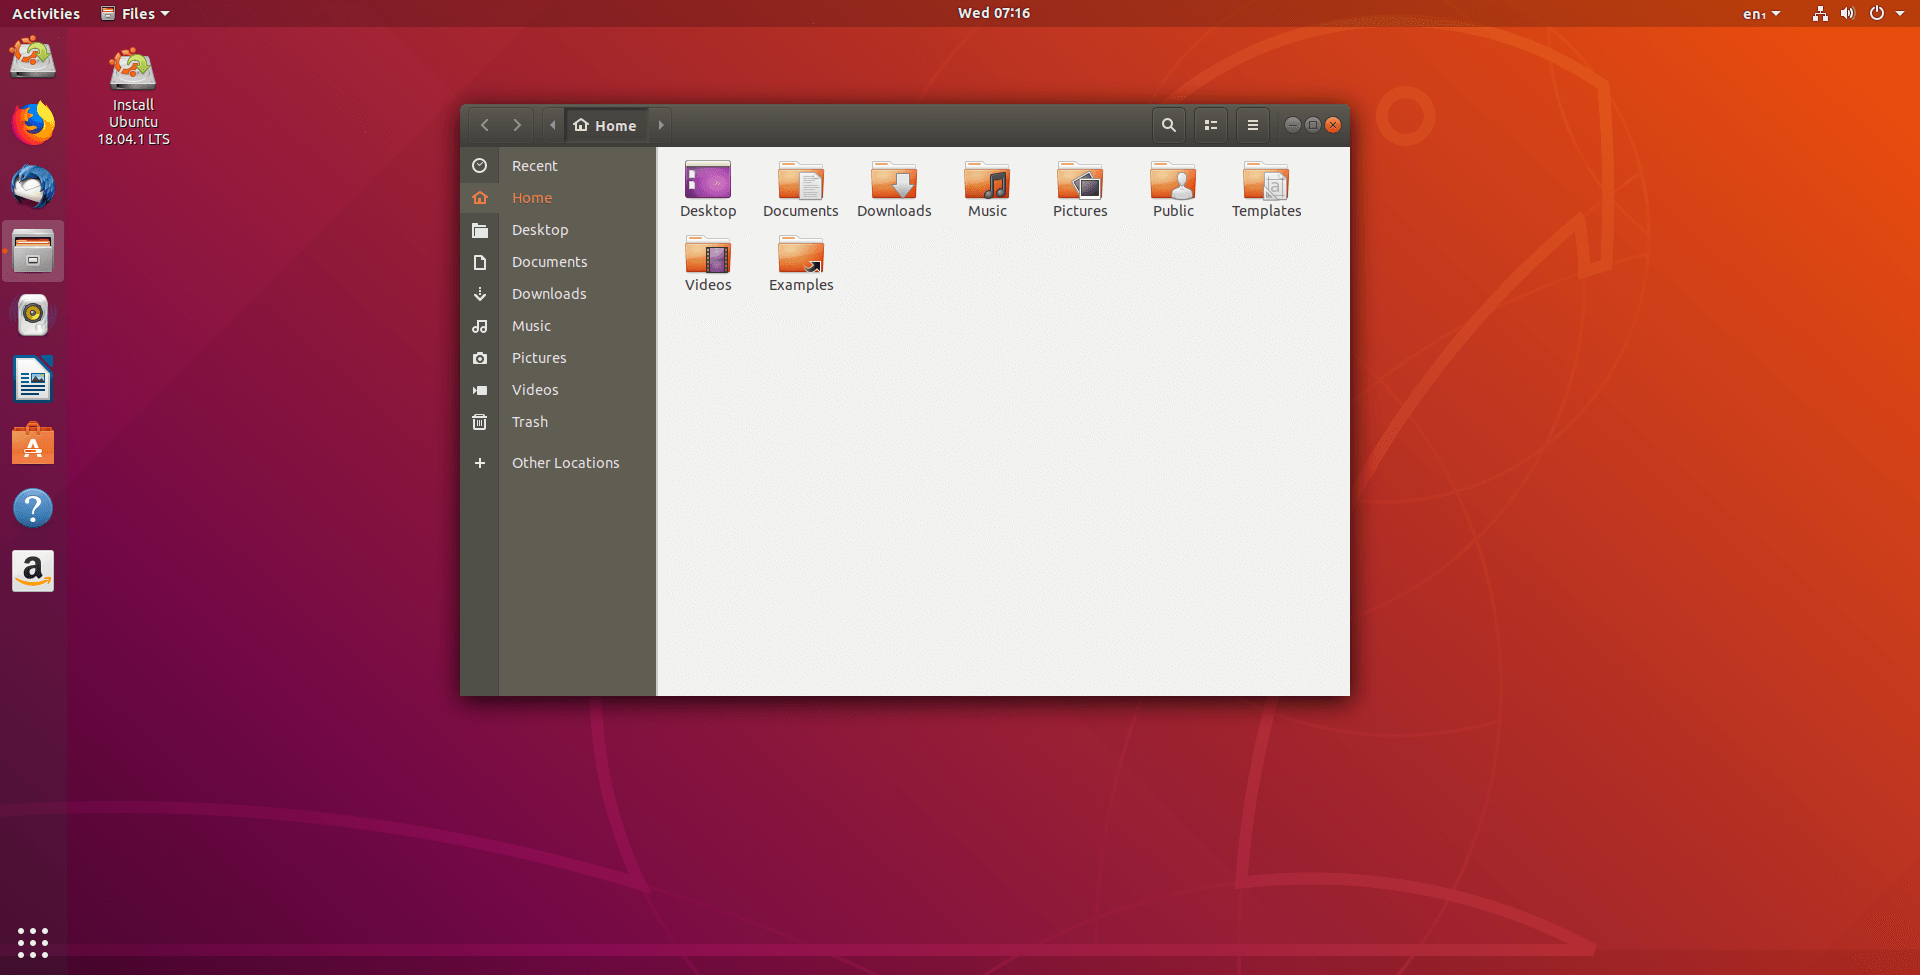 ubuntu download iso